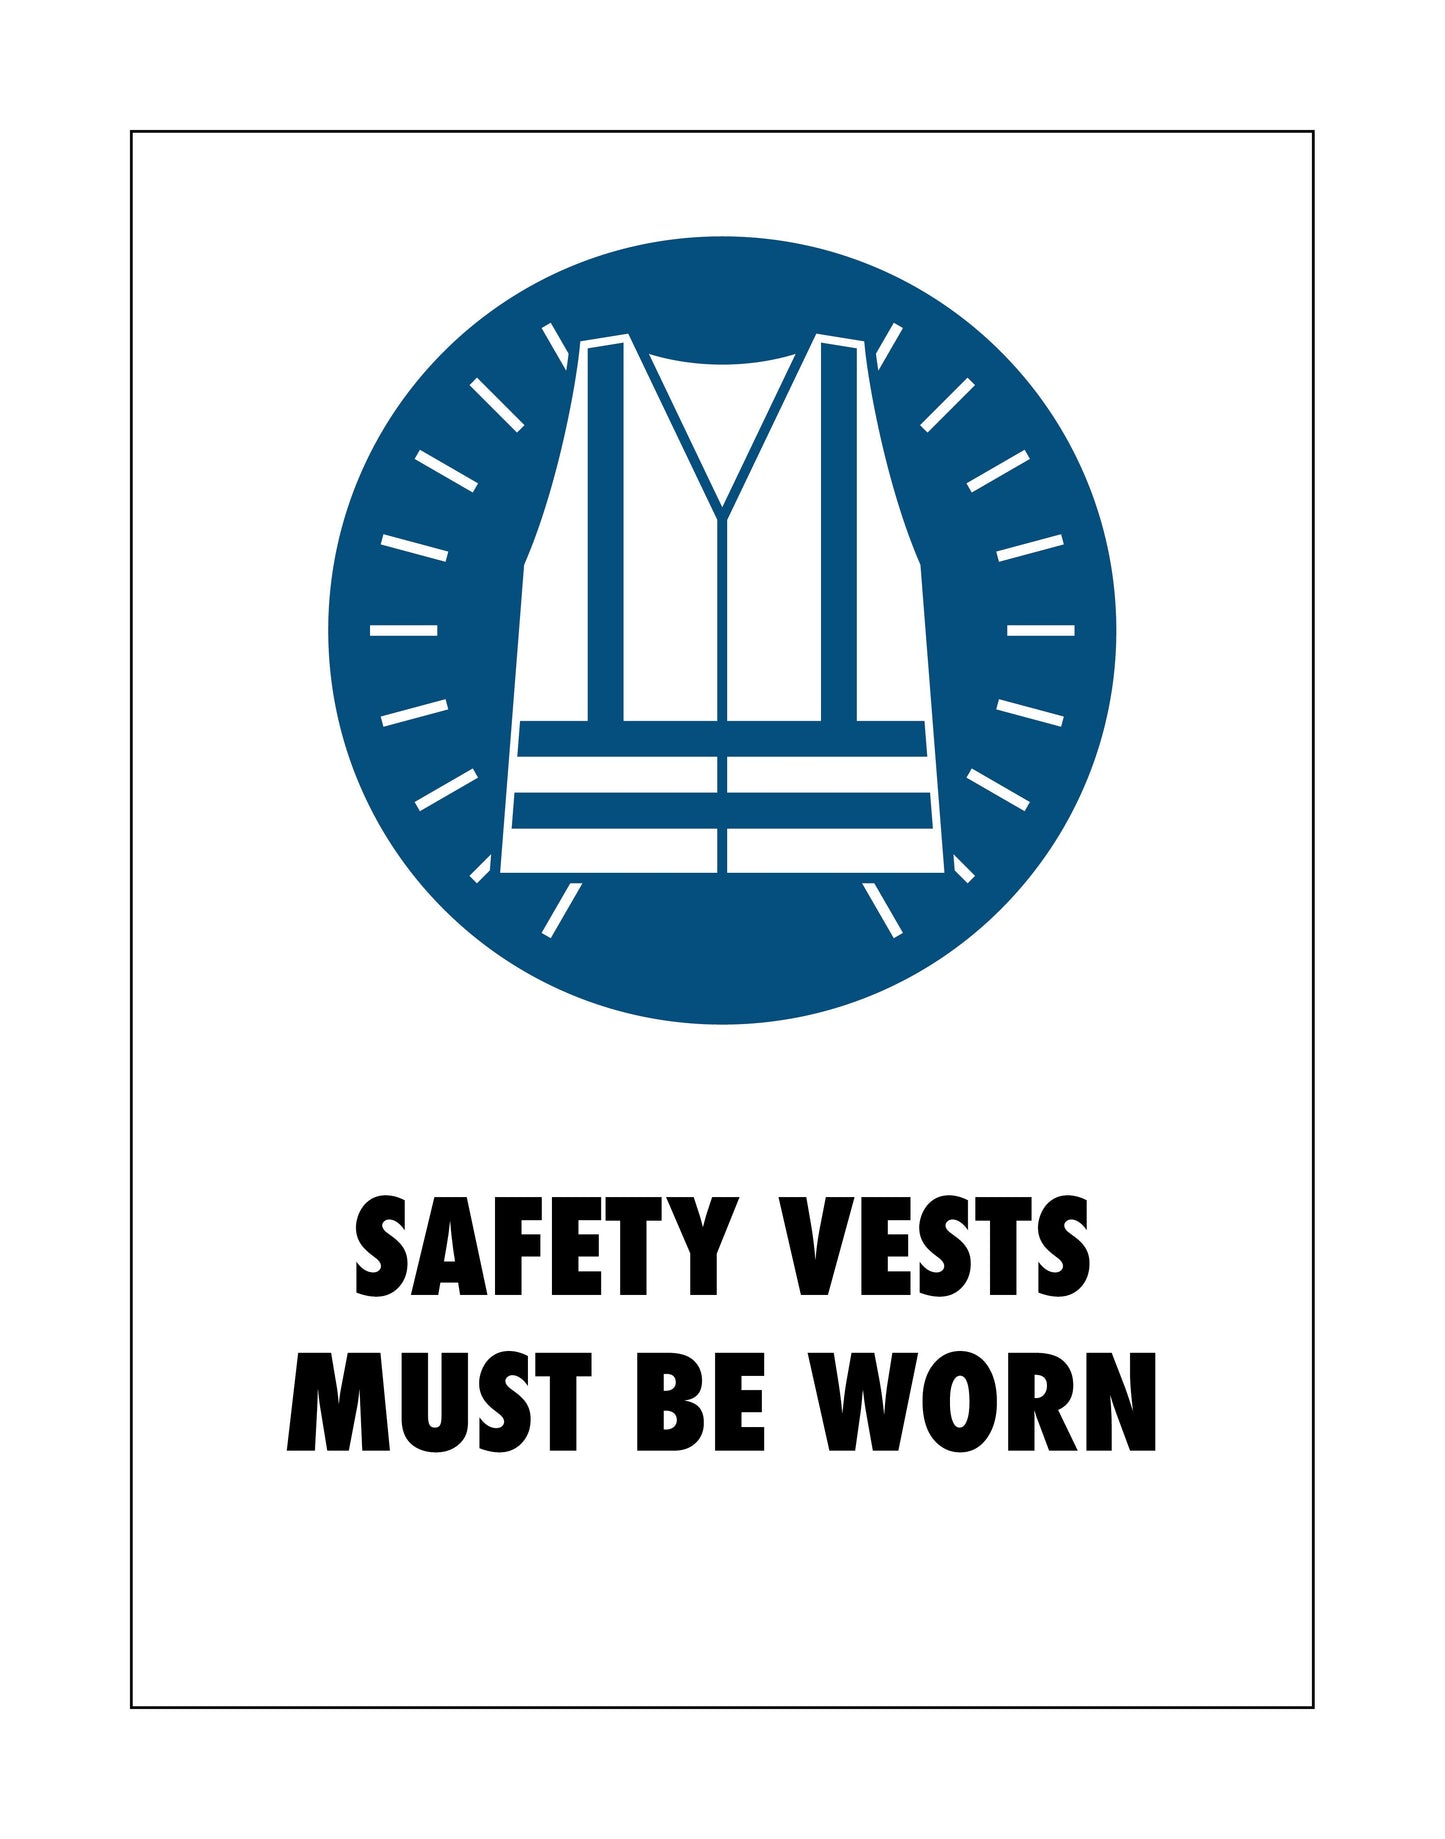 Safety Vests Sign